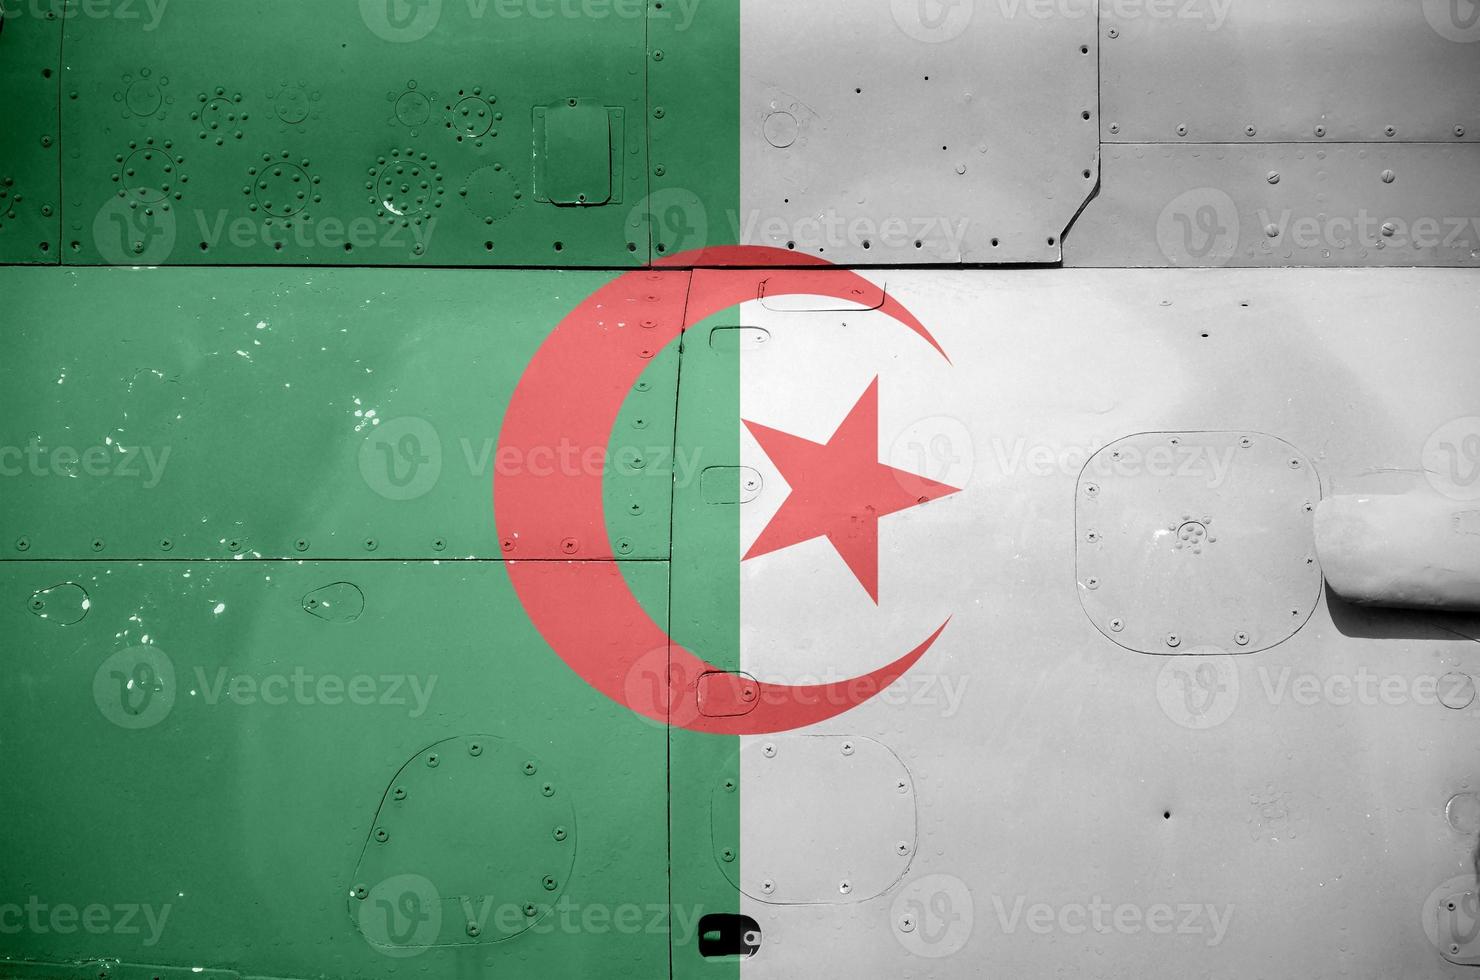 algeriet flagga avbildad på sida del av militär armerad helikopter närbild. armén krafter flygplan konceptuell bakgrund foto